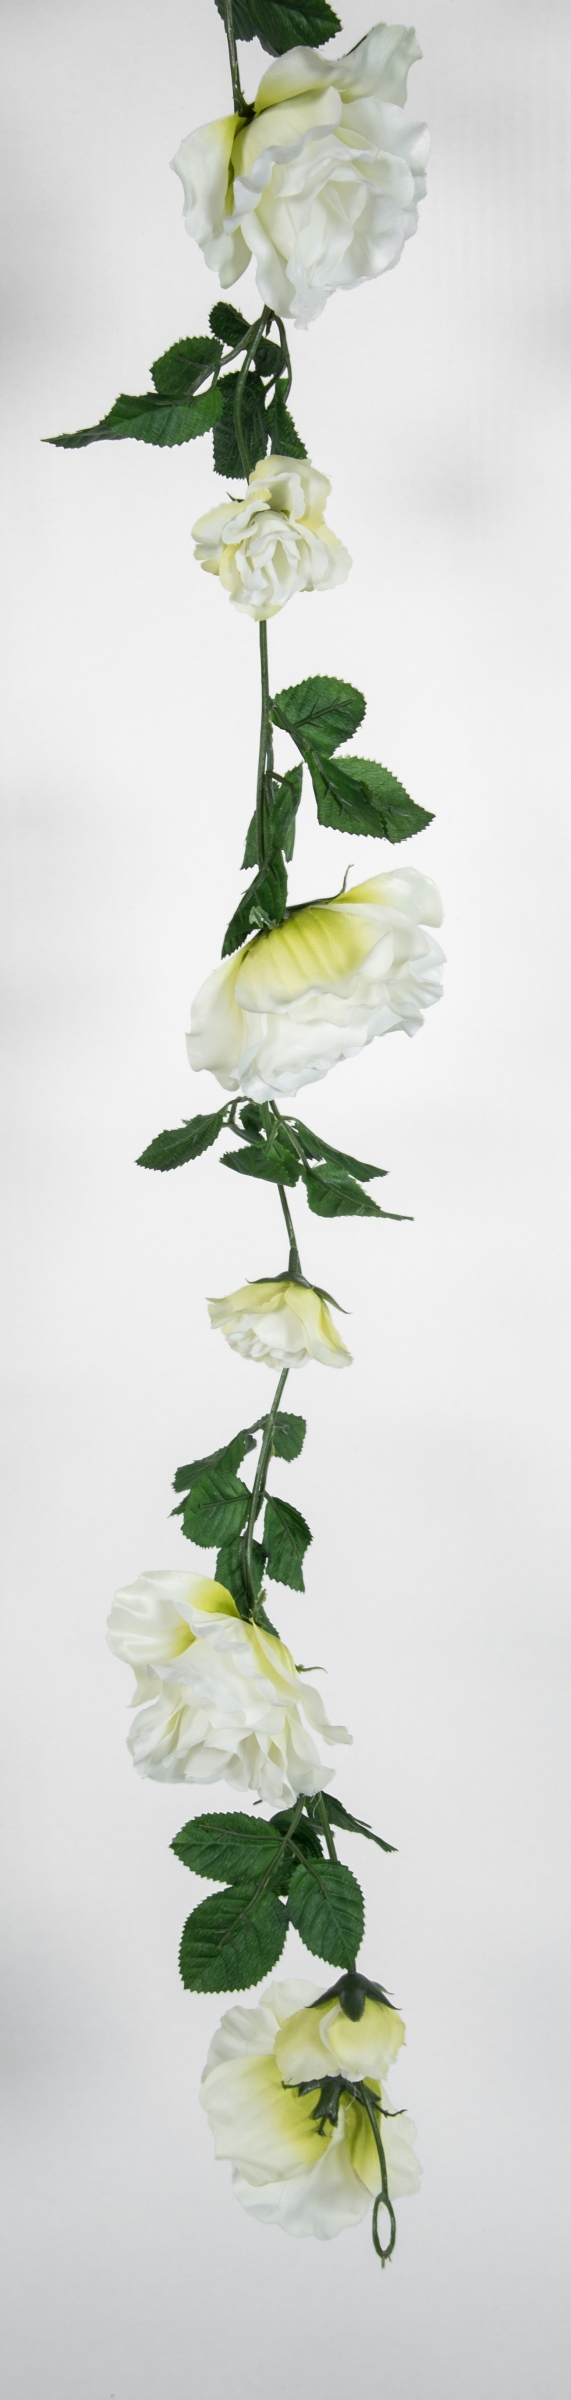 Rosengirlande 180cm weiß mit 13 Rosen Blüten GA Girlande Seidenblumen Kunstblumen künstliche